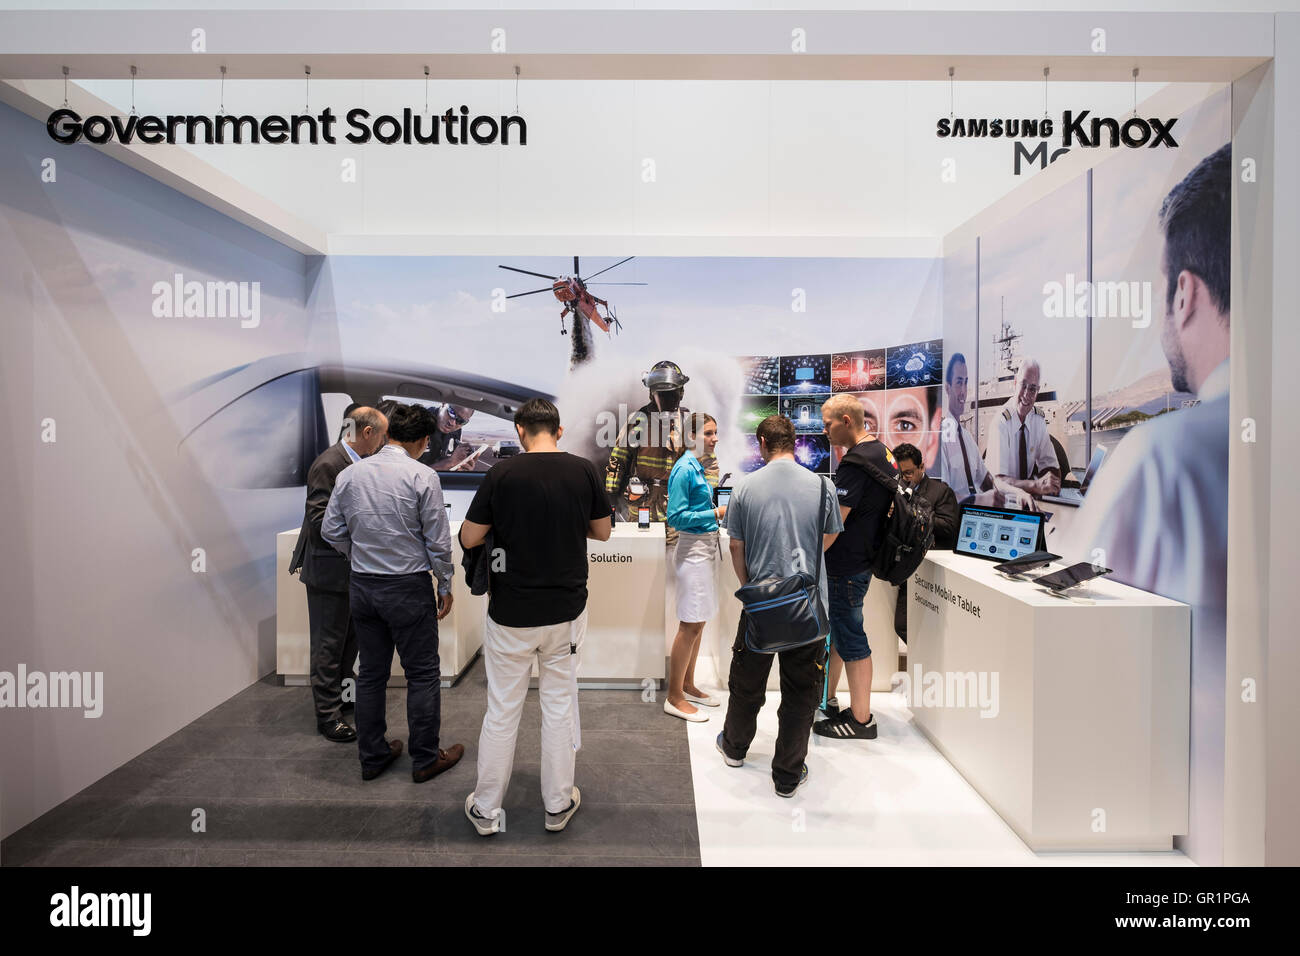 Système de sécurité Knox Samsung montrant les applications gouvernementales à 2016 IFA (Internationale Funkausstellung Berlin), Berlin, Germa Banque D'Images